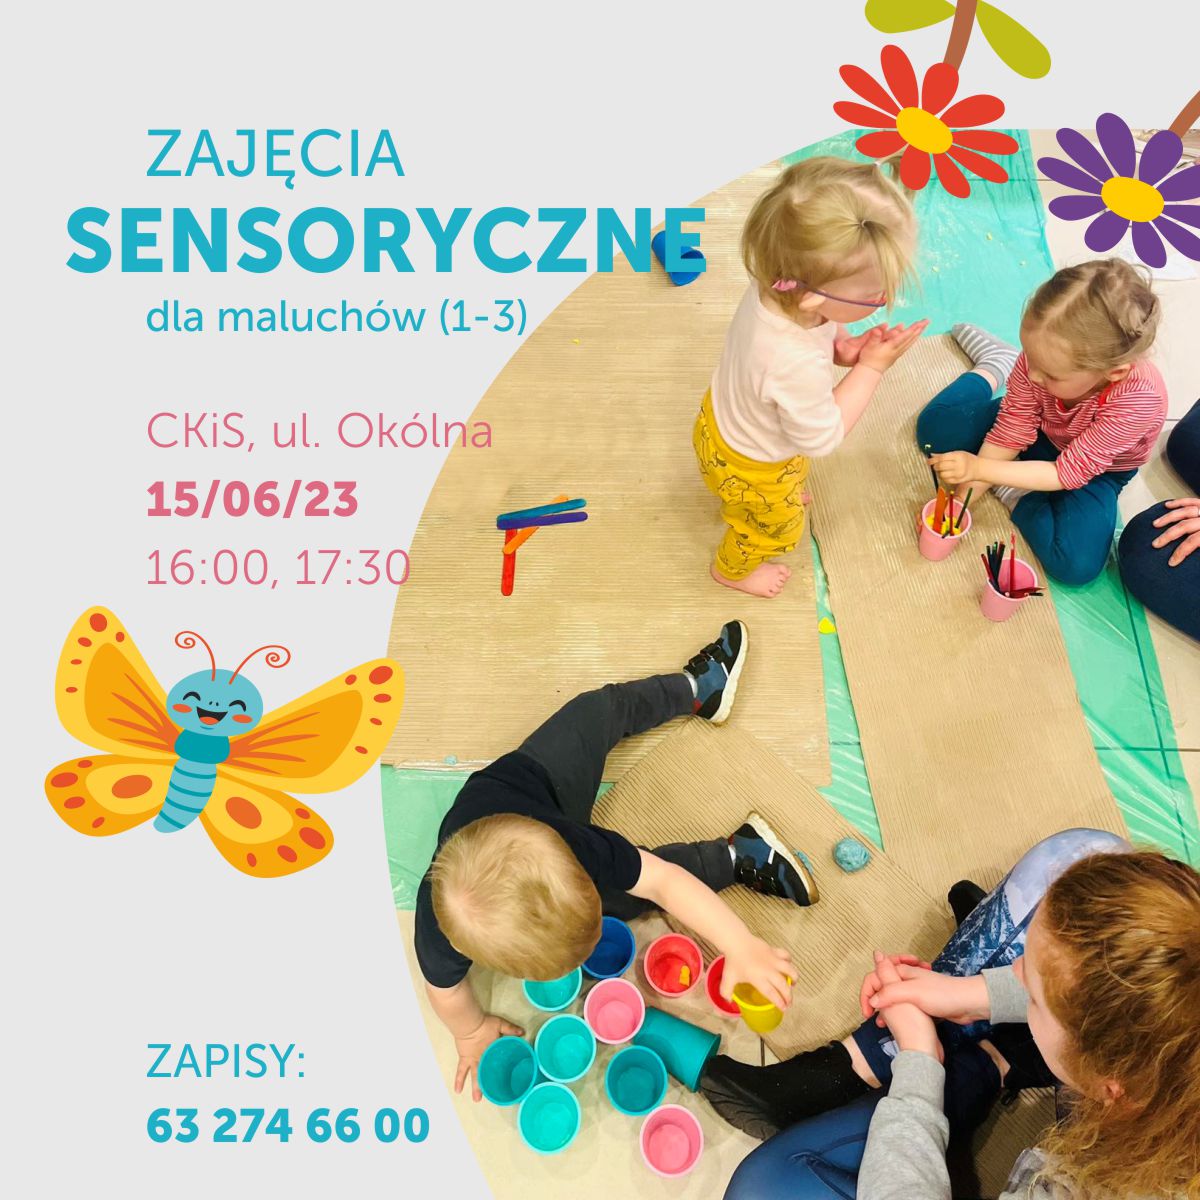 Zajęcia sensoryczne dla maluchów - rozwój i zabawa